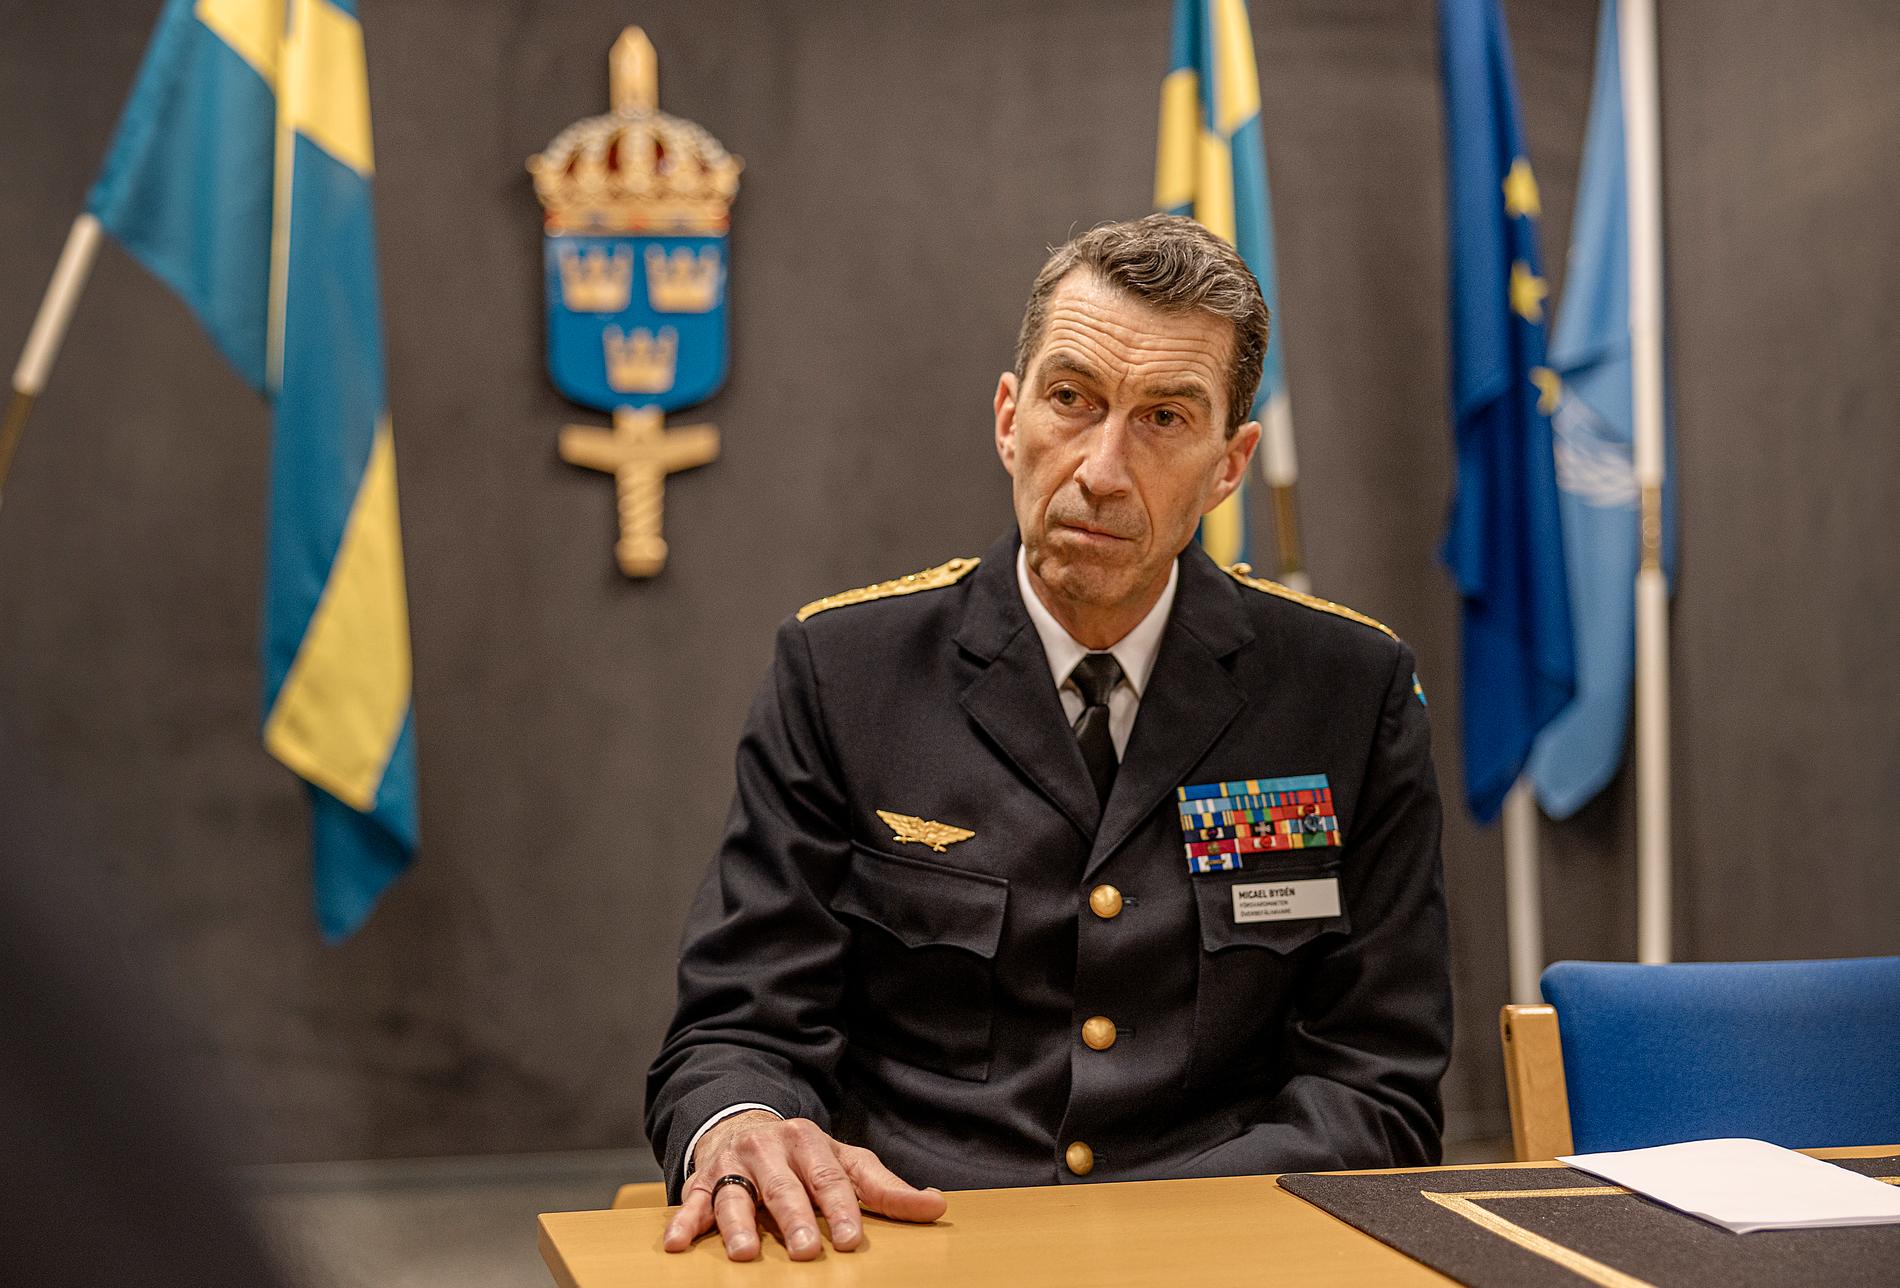 Micael Bydén intervjuades av Aftonbladet på Försvarsmaktens högkvarter i Stockholm. 